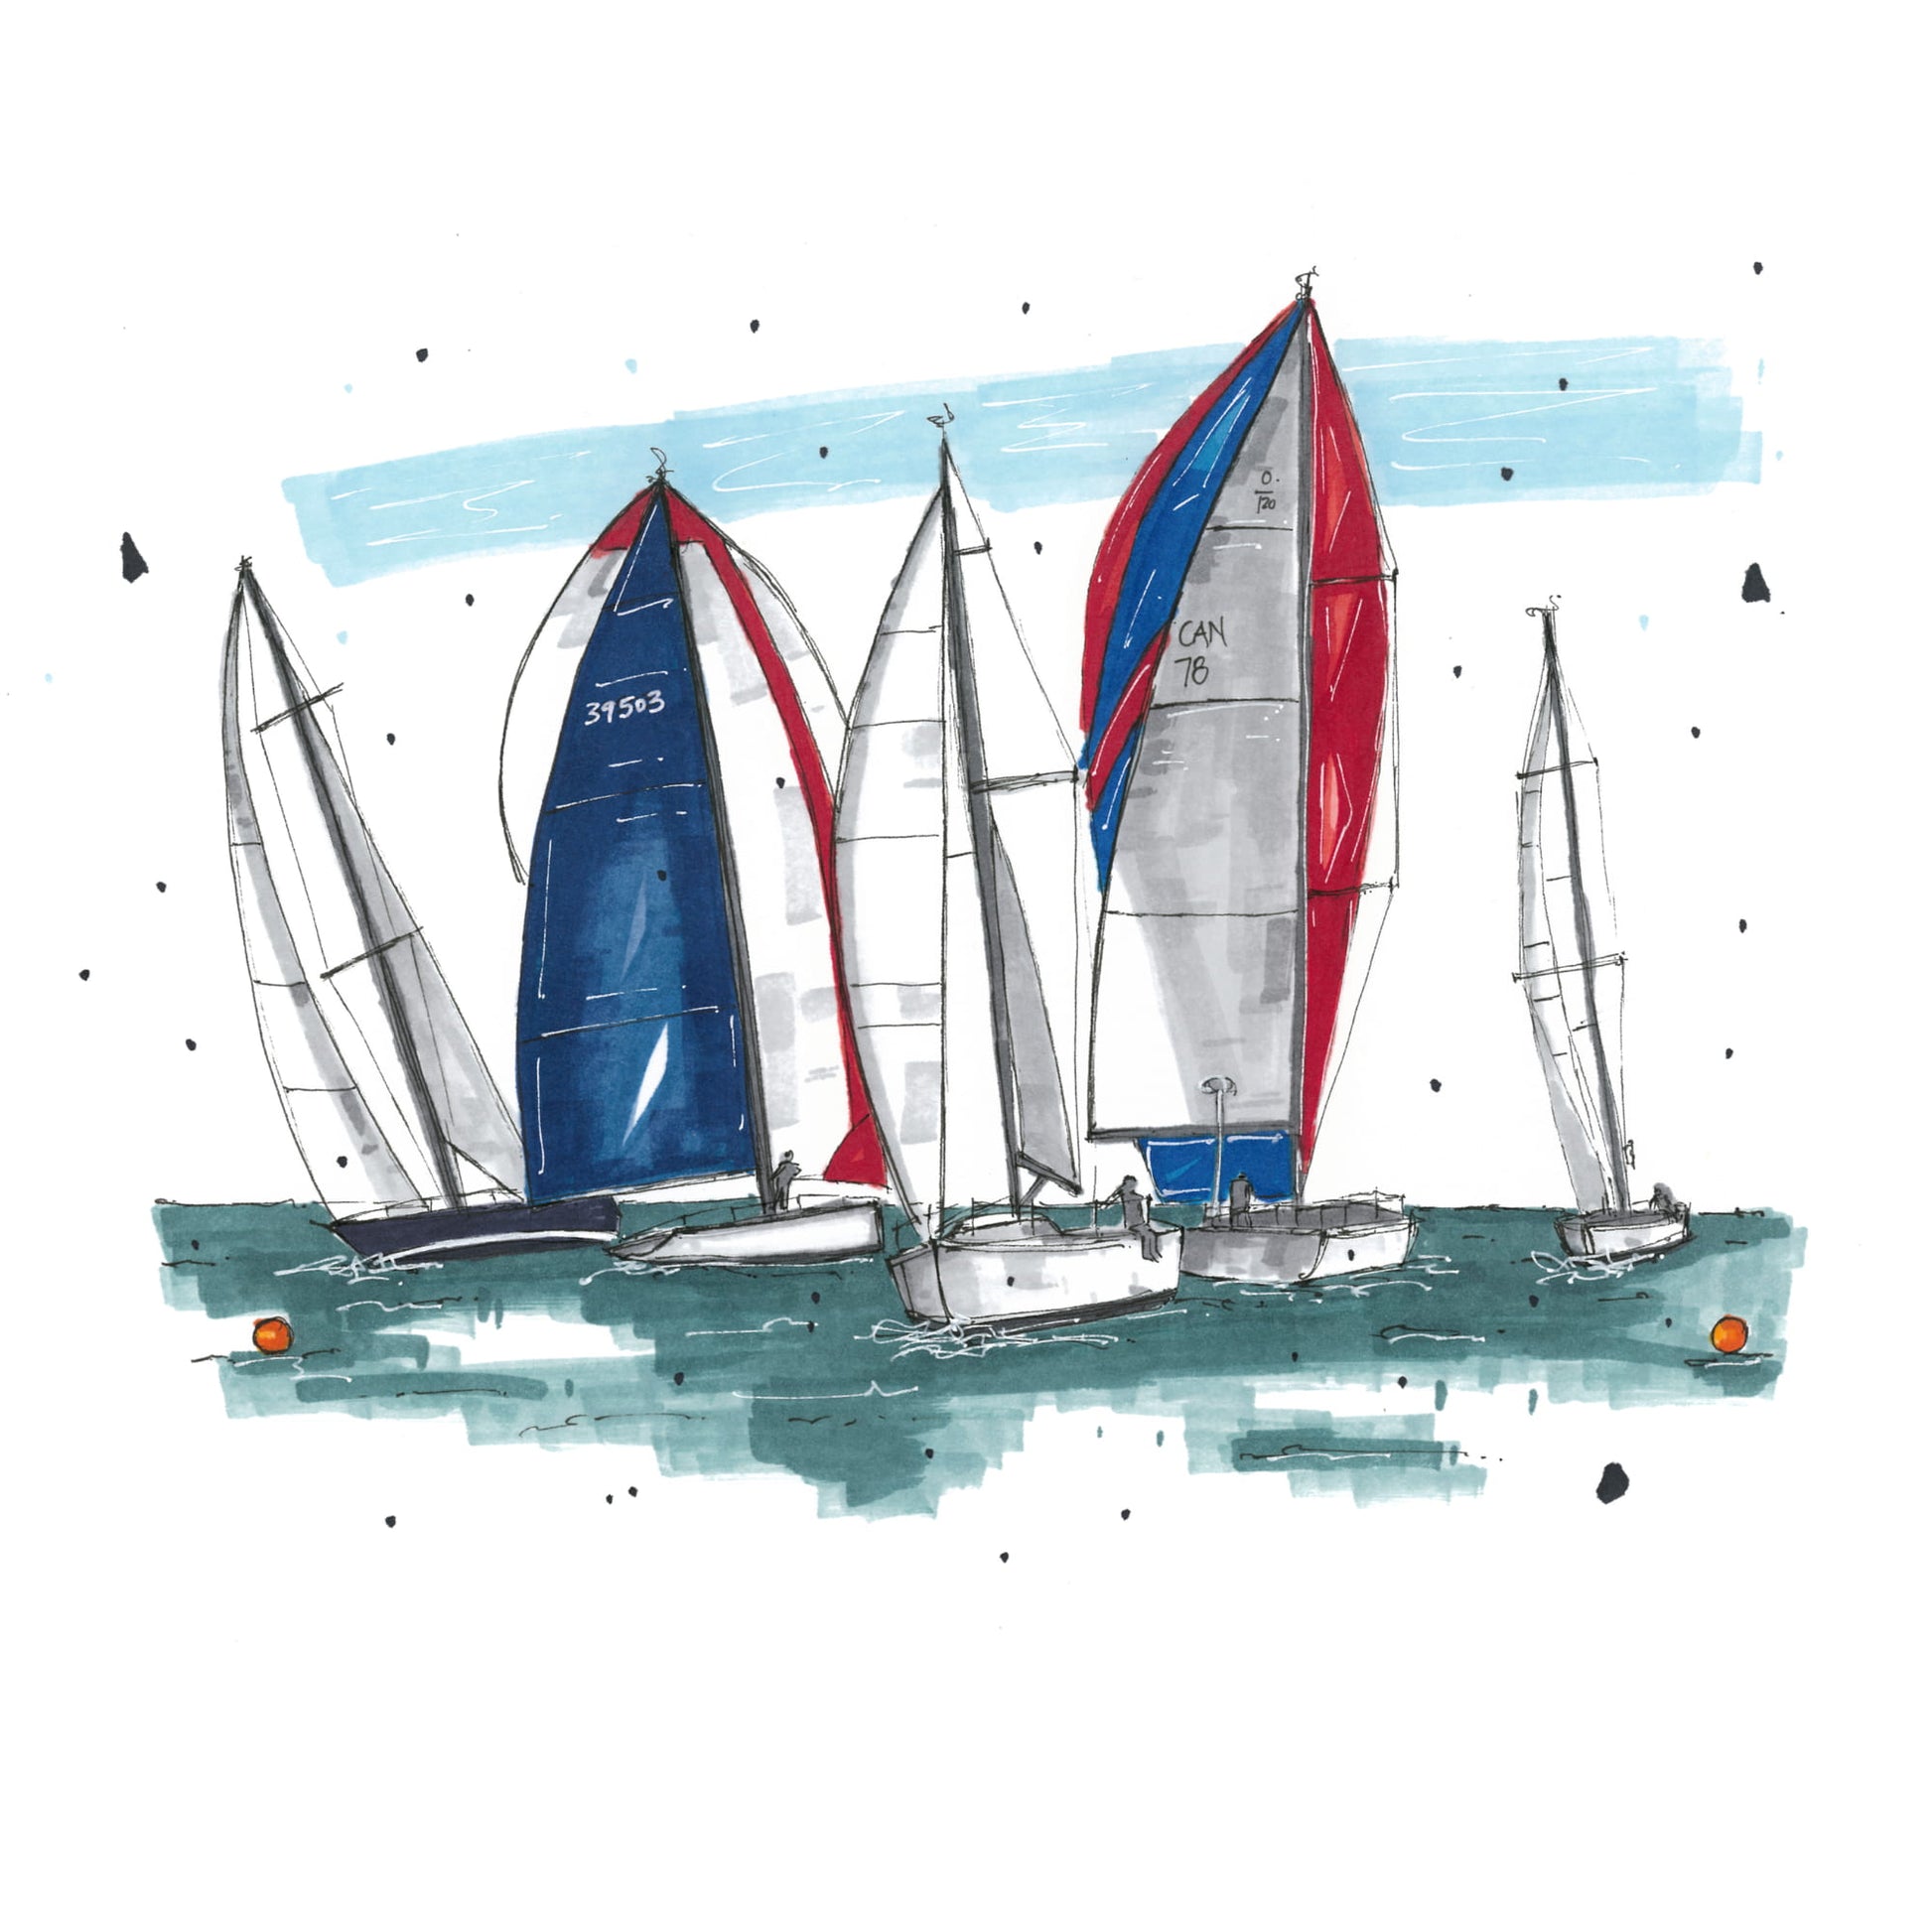 DTS0078 - Chester Race Week - Sailboats, Art Print - Artwork Print Sketch 2 - Downtown Sketcher (3)